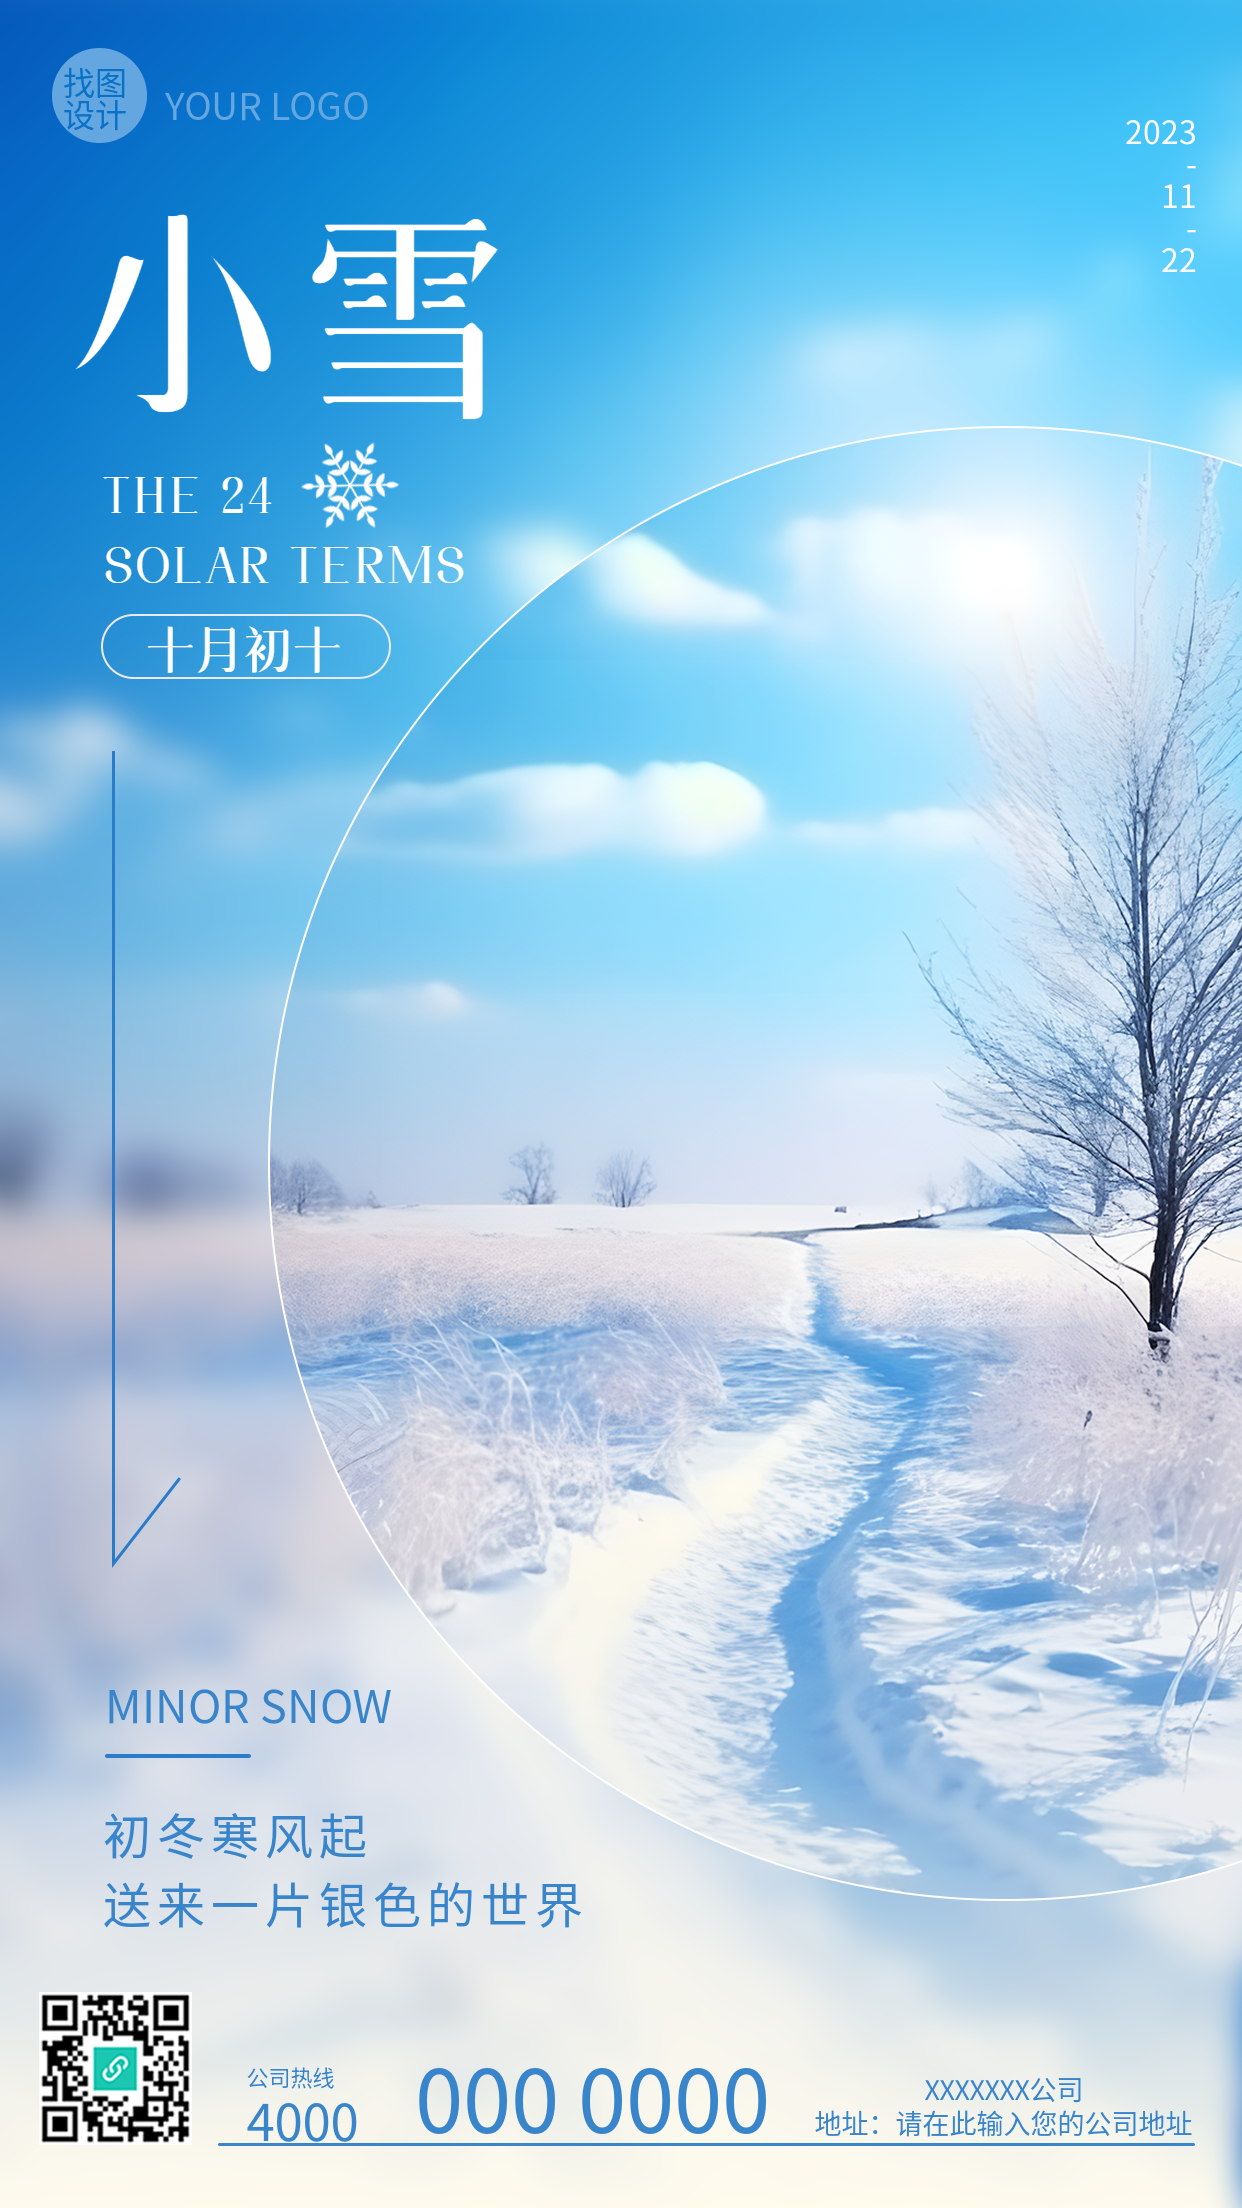 初冬寒风起小雪时节到创意实景手机海报